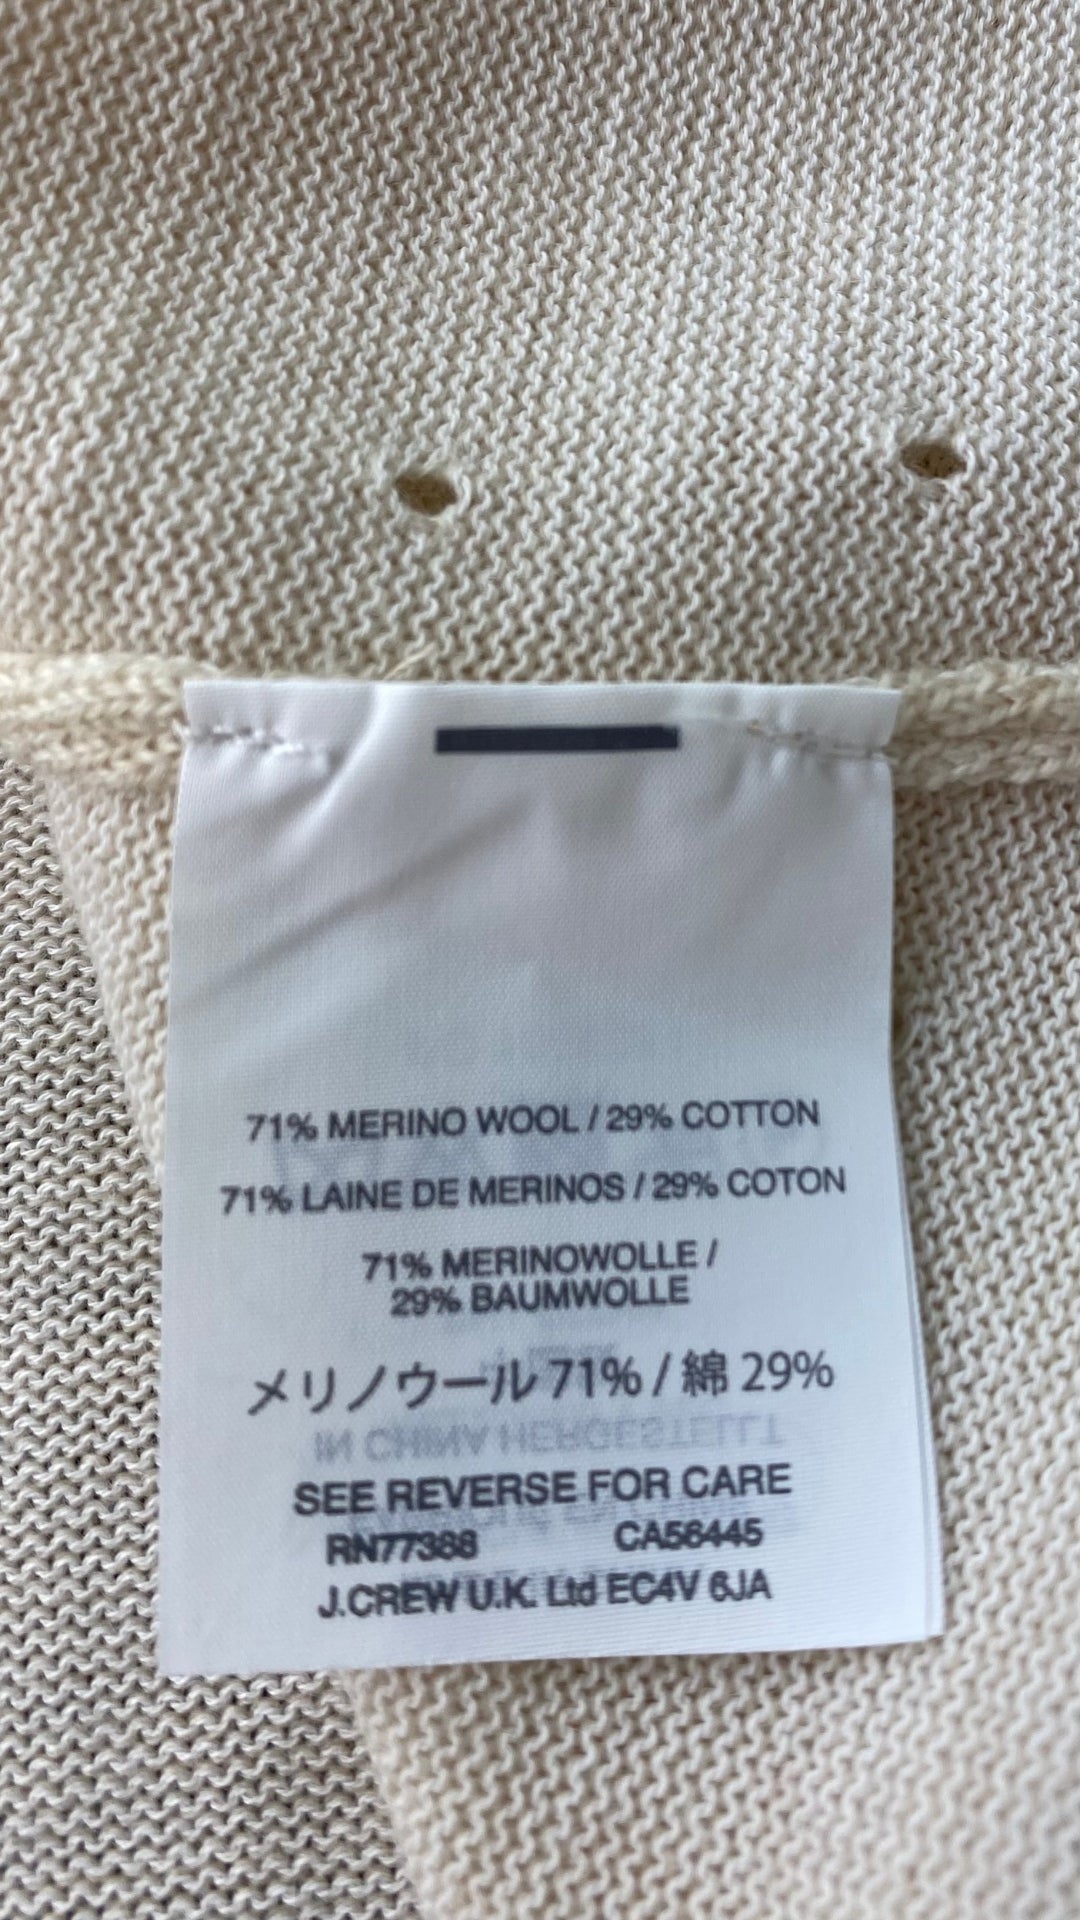 Chandail tricot avoine mélange de laine mérinos et coton, marque J.Crew, taille small. Vue de l'étiquette de composition.